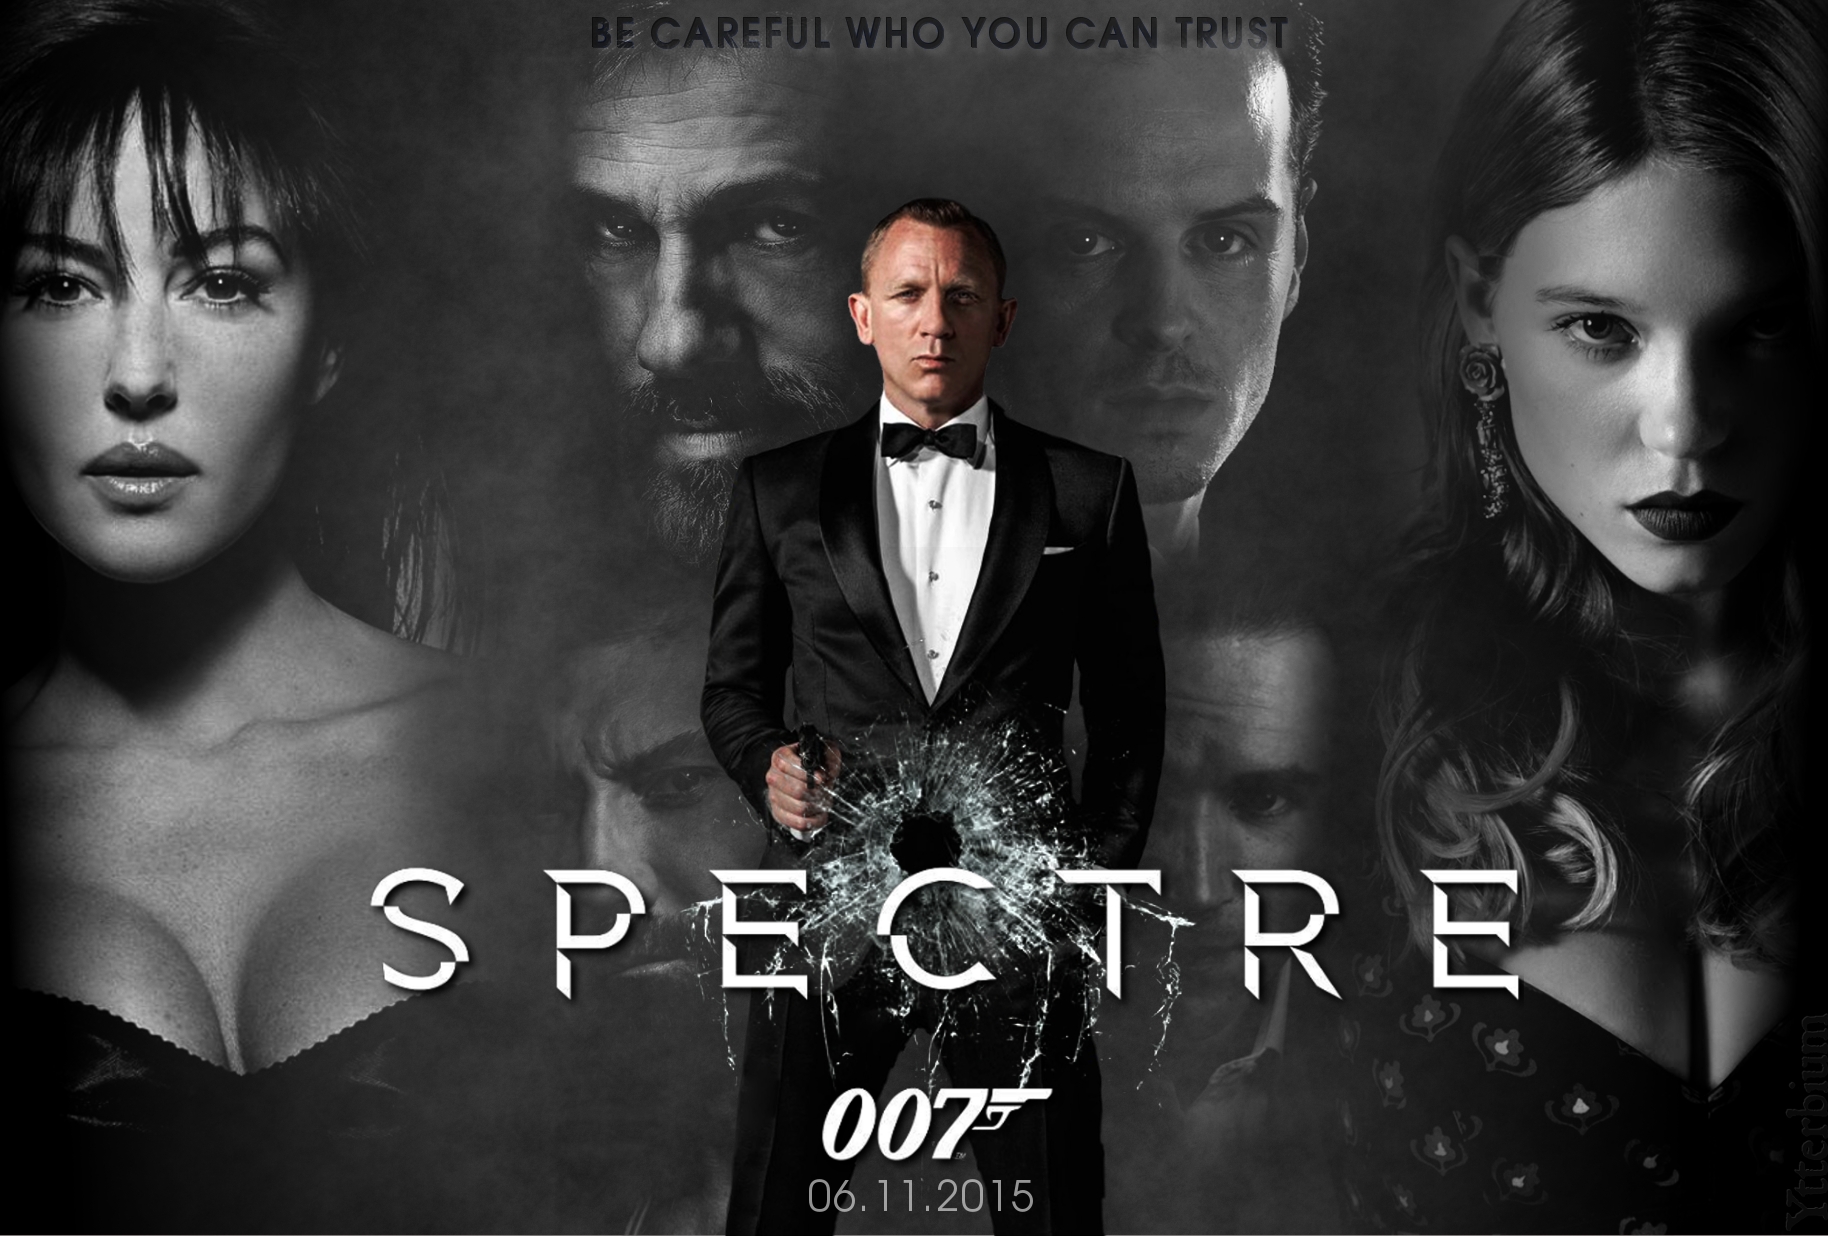 Spectre s. Дэниел Крейг 007 спектр. 007 Спектр Постер. 007. Спектр Spectre 2015 poster.